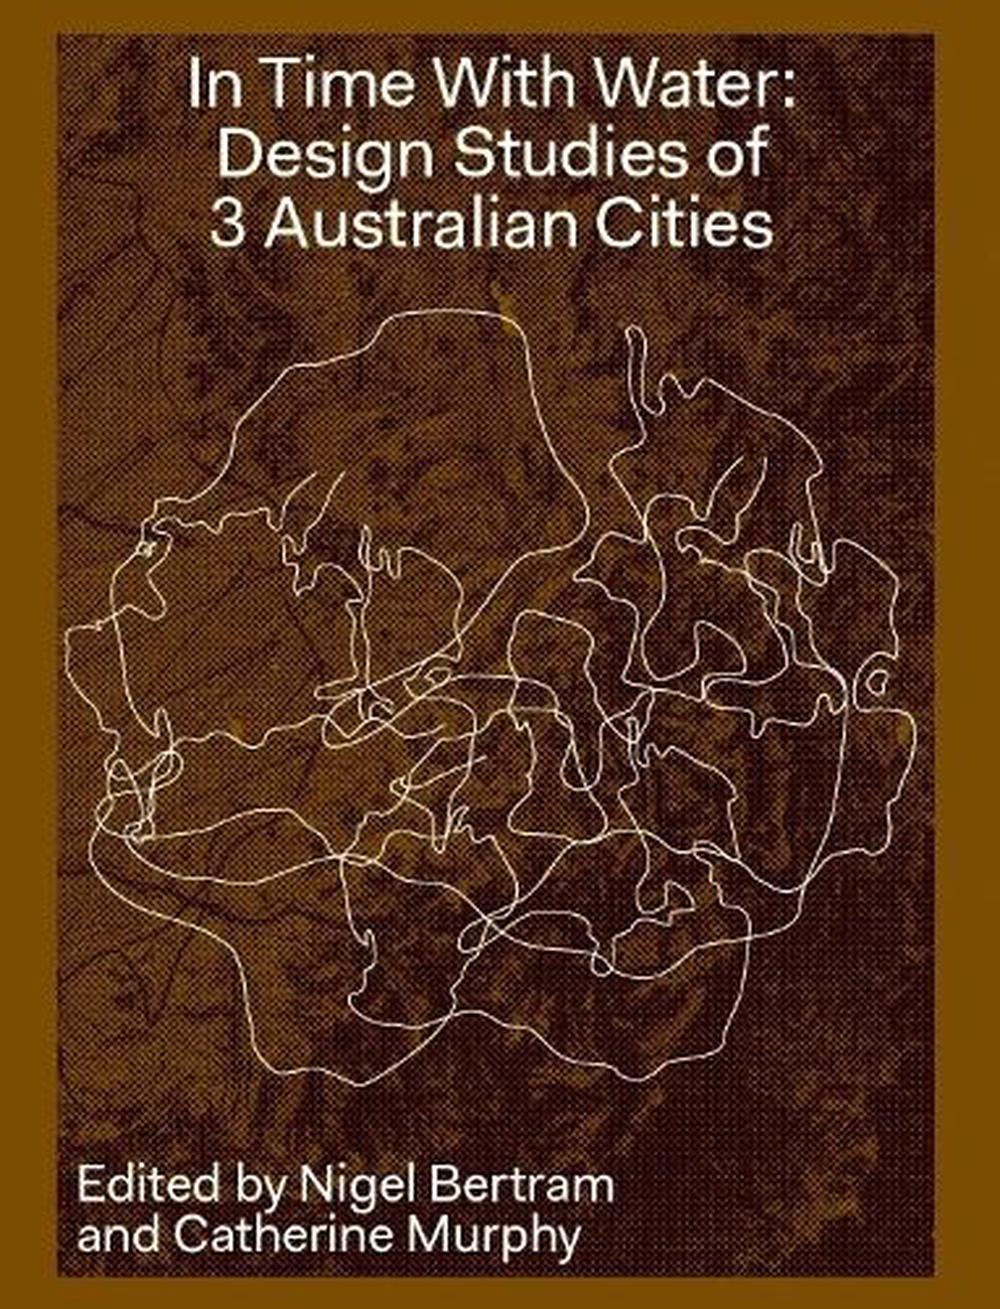 In Time With Water: Design Studies of 3 Australian Cities par Nigel Bertram - Photo 1 sur 1